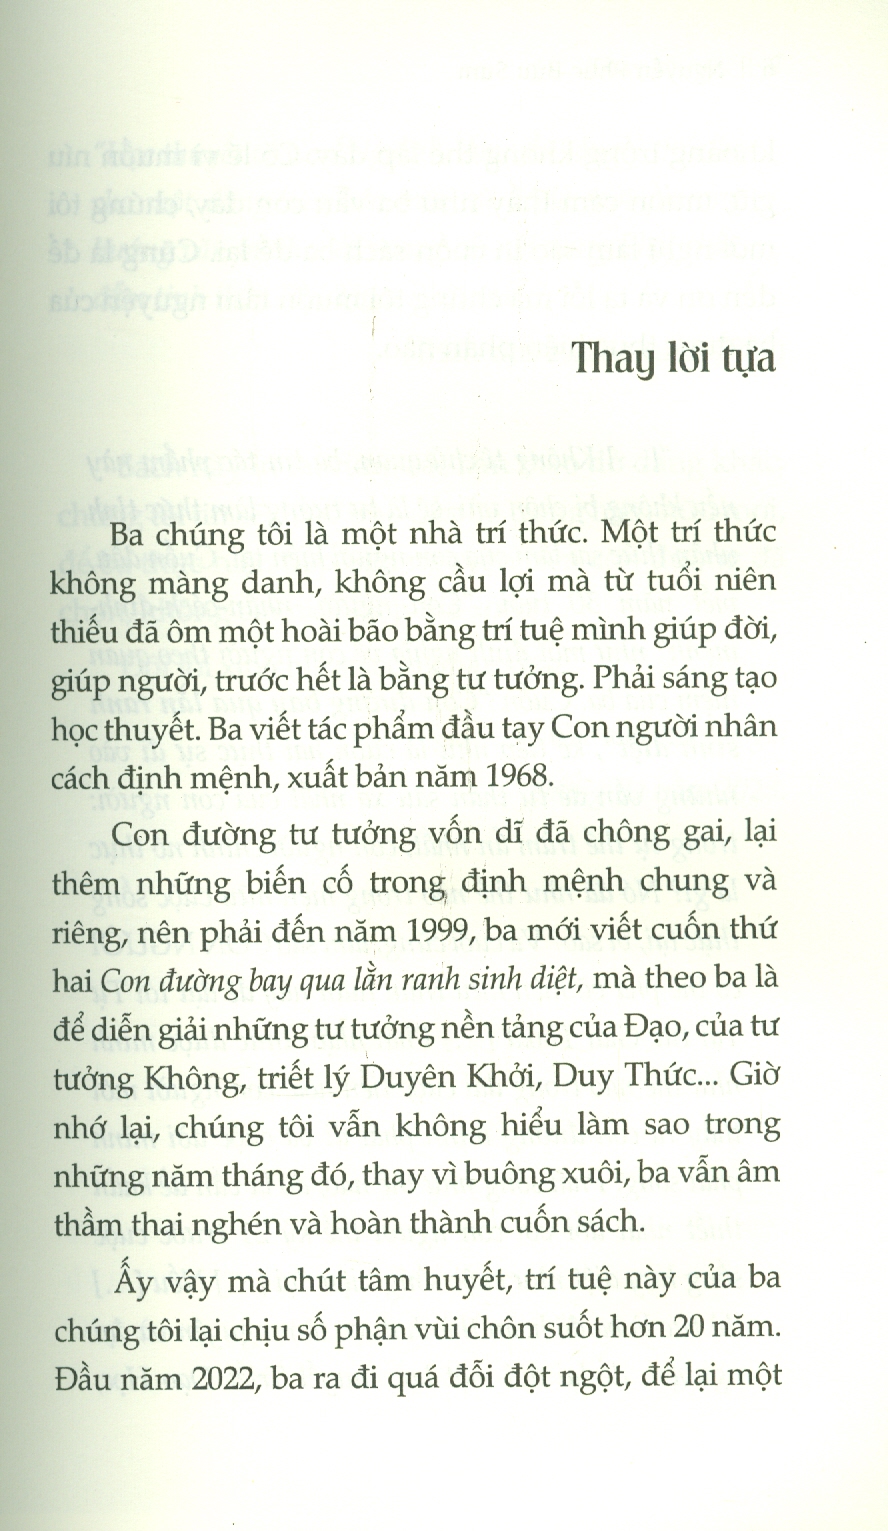 CON ĐƯỜNG BAY QUA LẰN RANH SINH DIỆT – Nguyễn Phúc Bửu Sum - Tao Đàn – Nxb Hội Nhà Văn (bìa mềm)